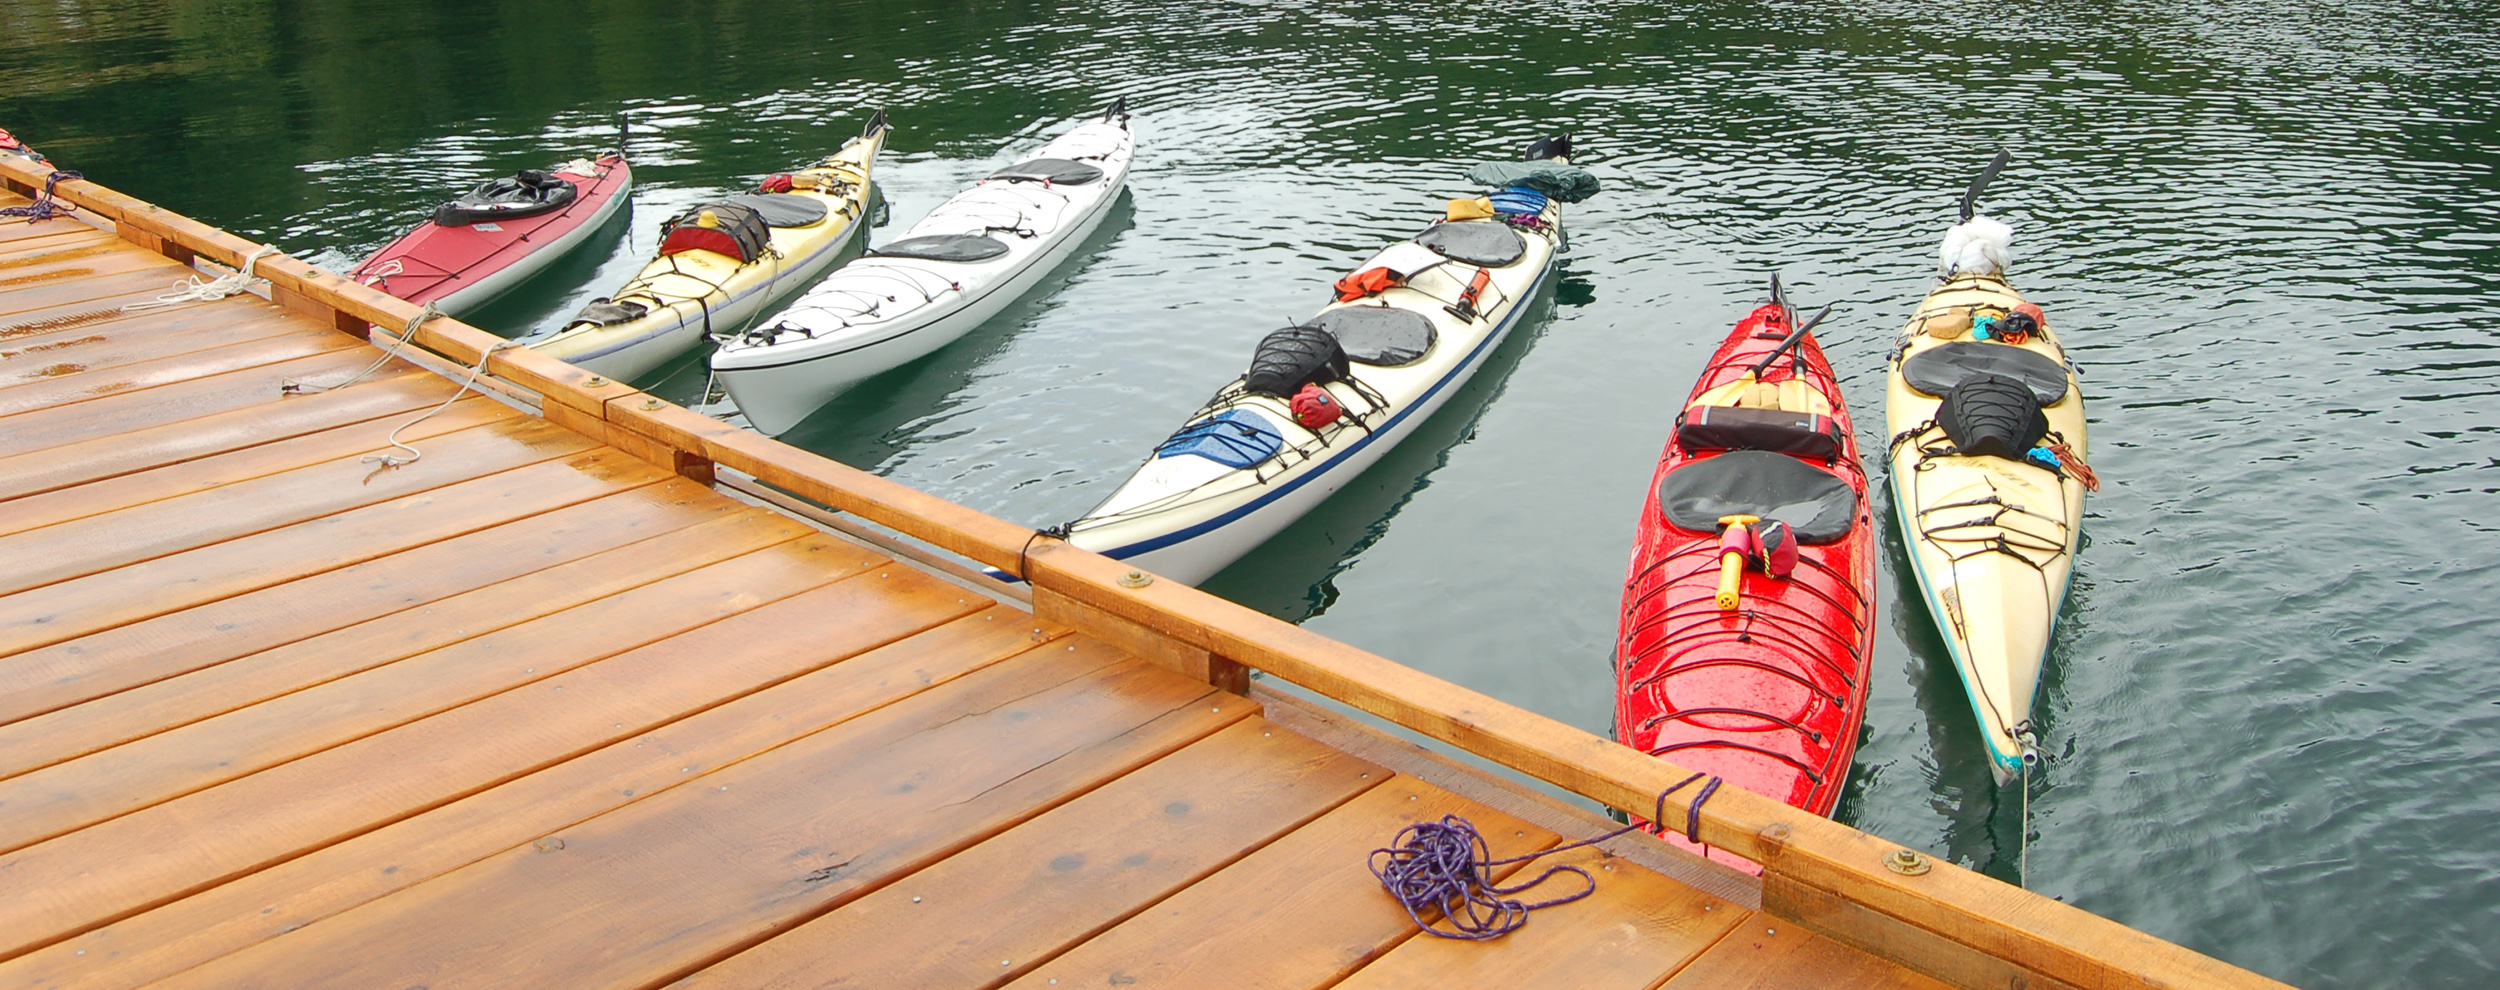 Kayaks at dock